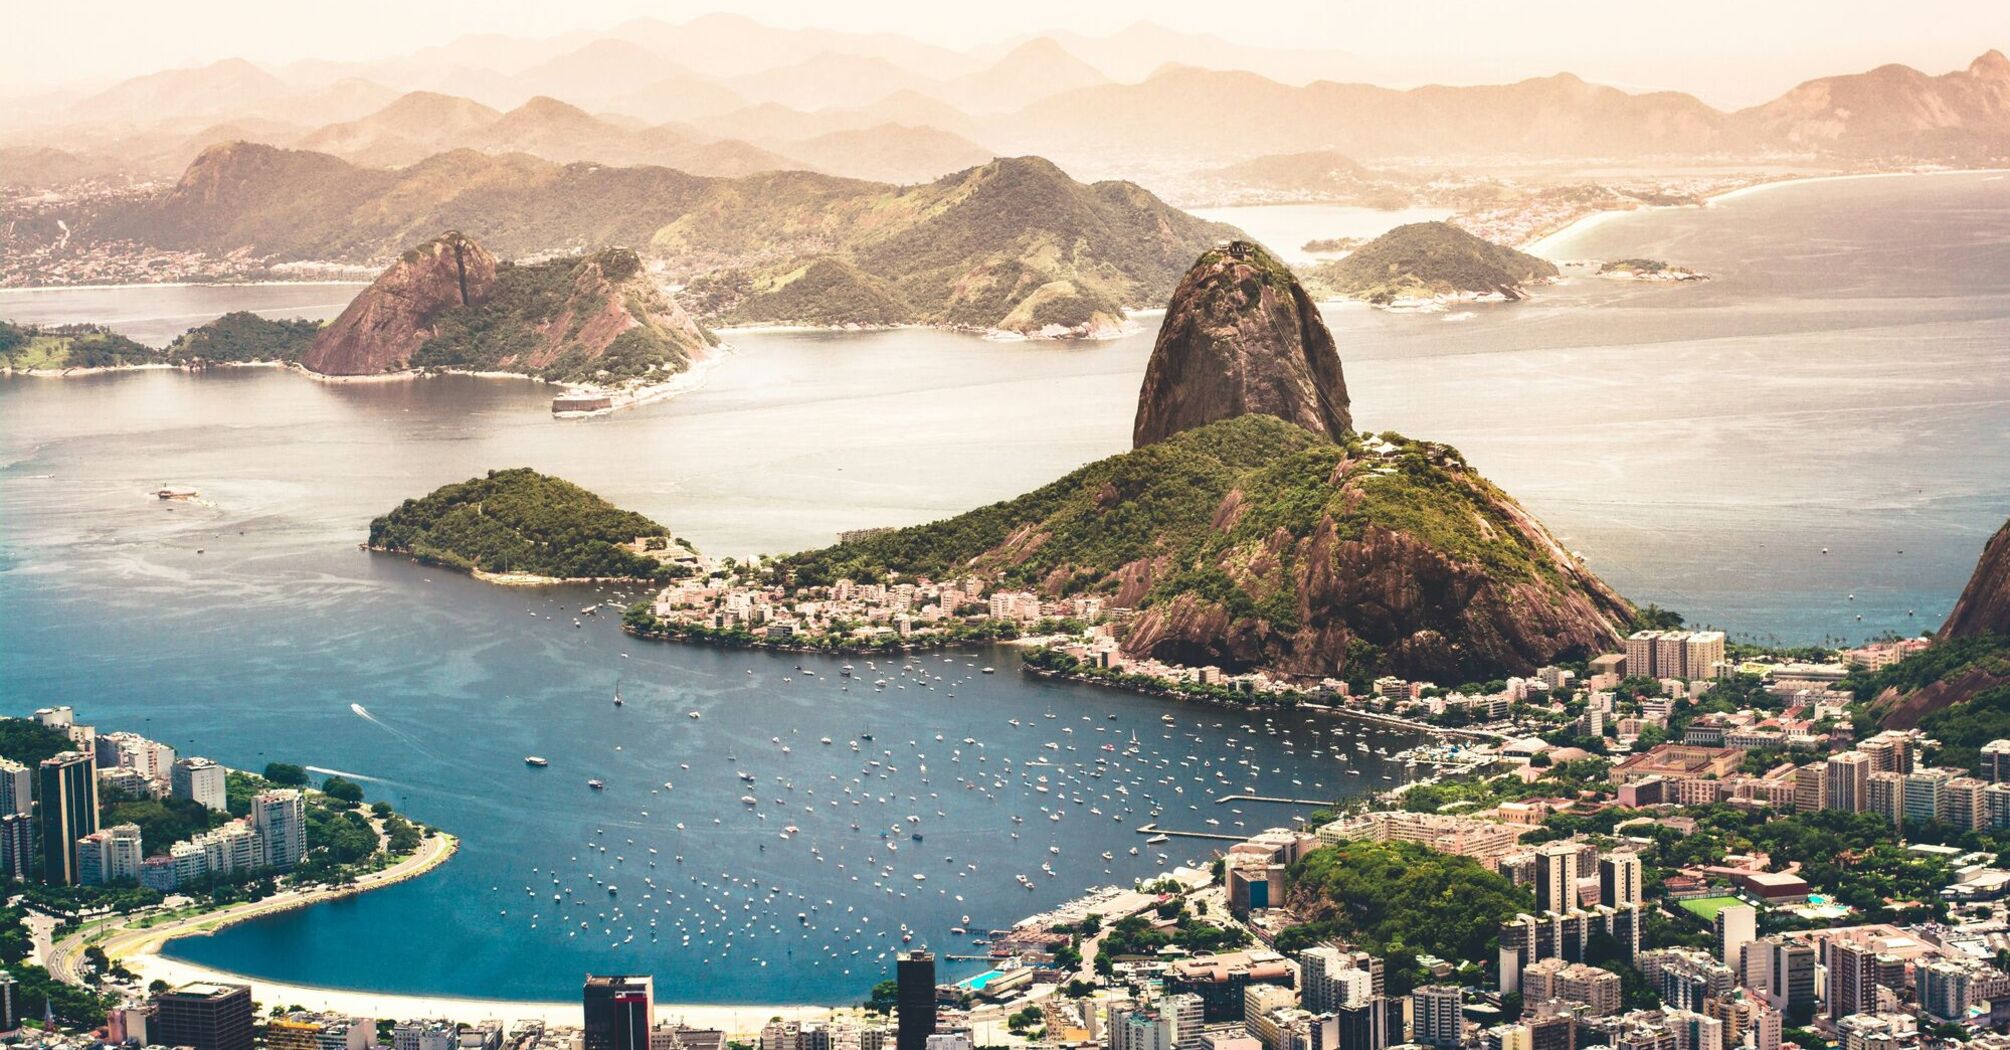 View of the landscape of Rio de Janeiro, Brazil